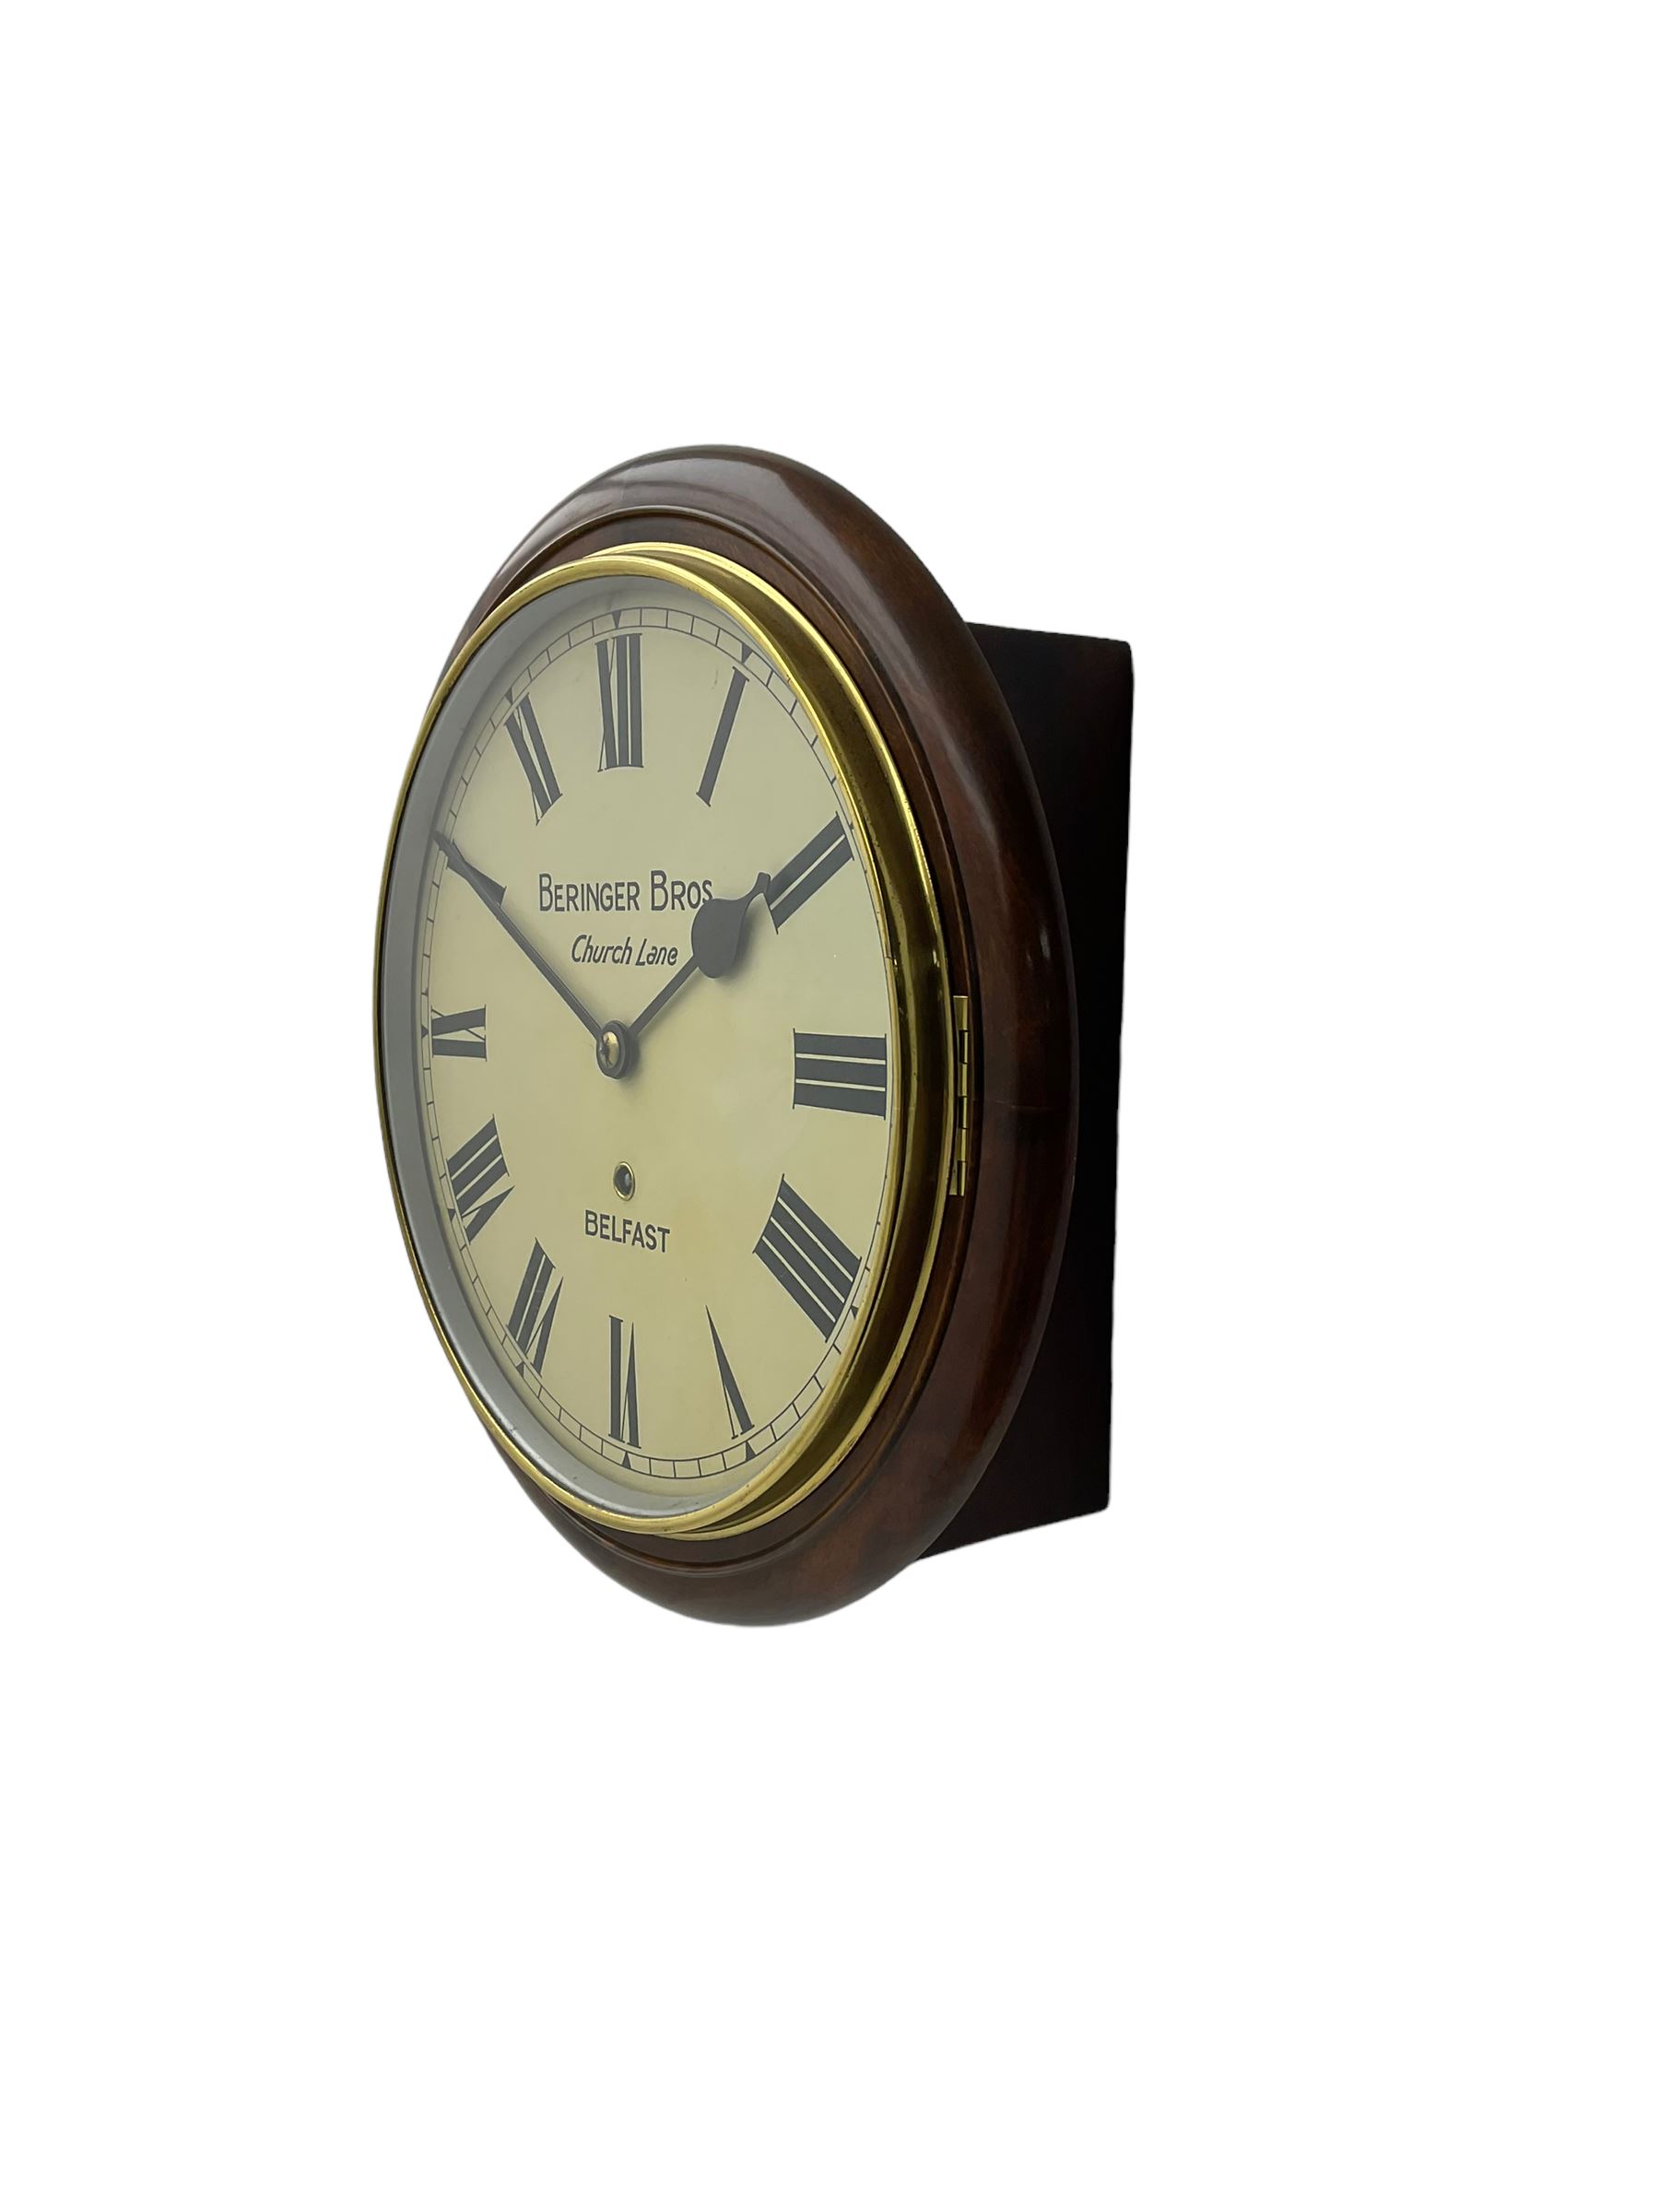 Early 20th century - 8-day mahogany wall clock - Image 2 of 4